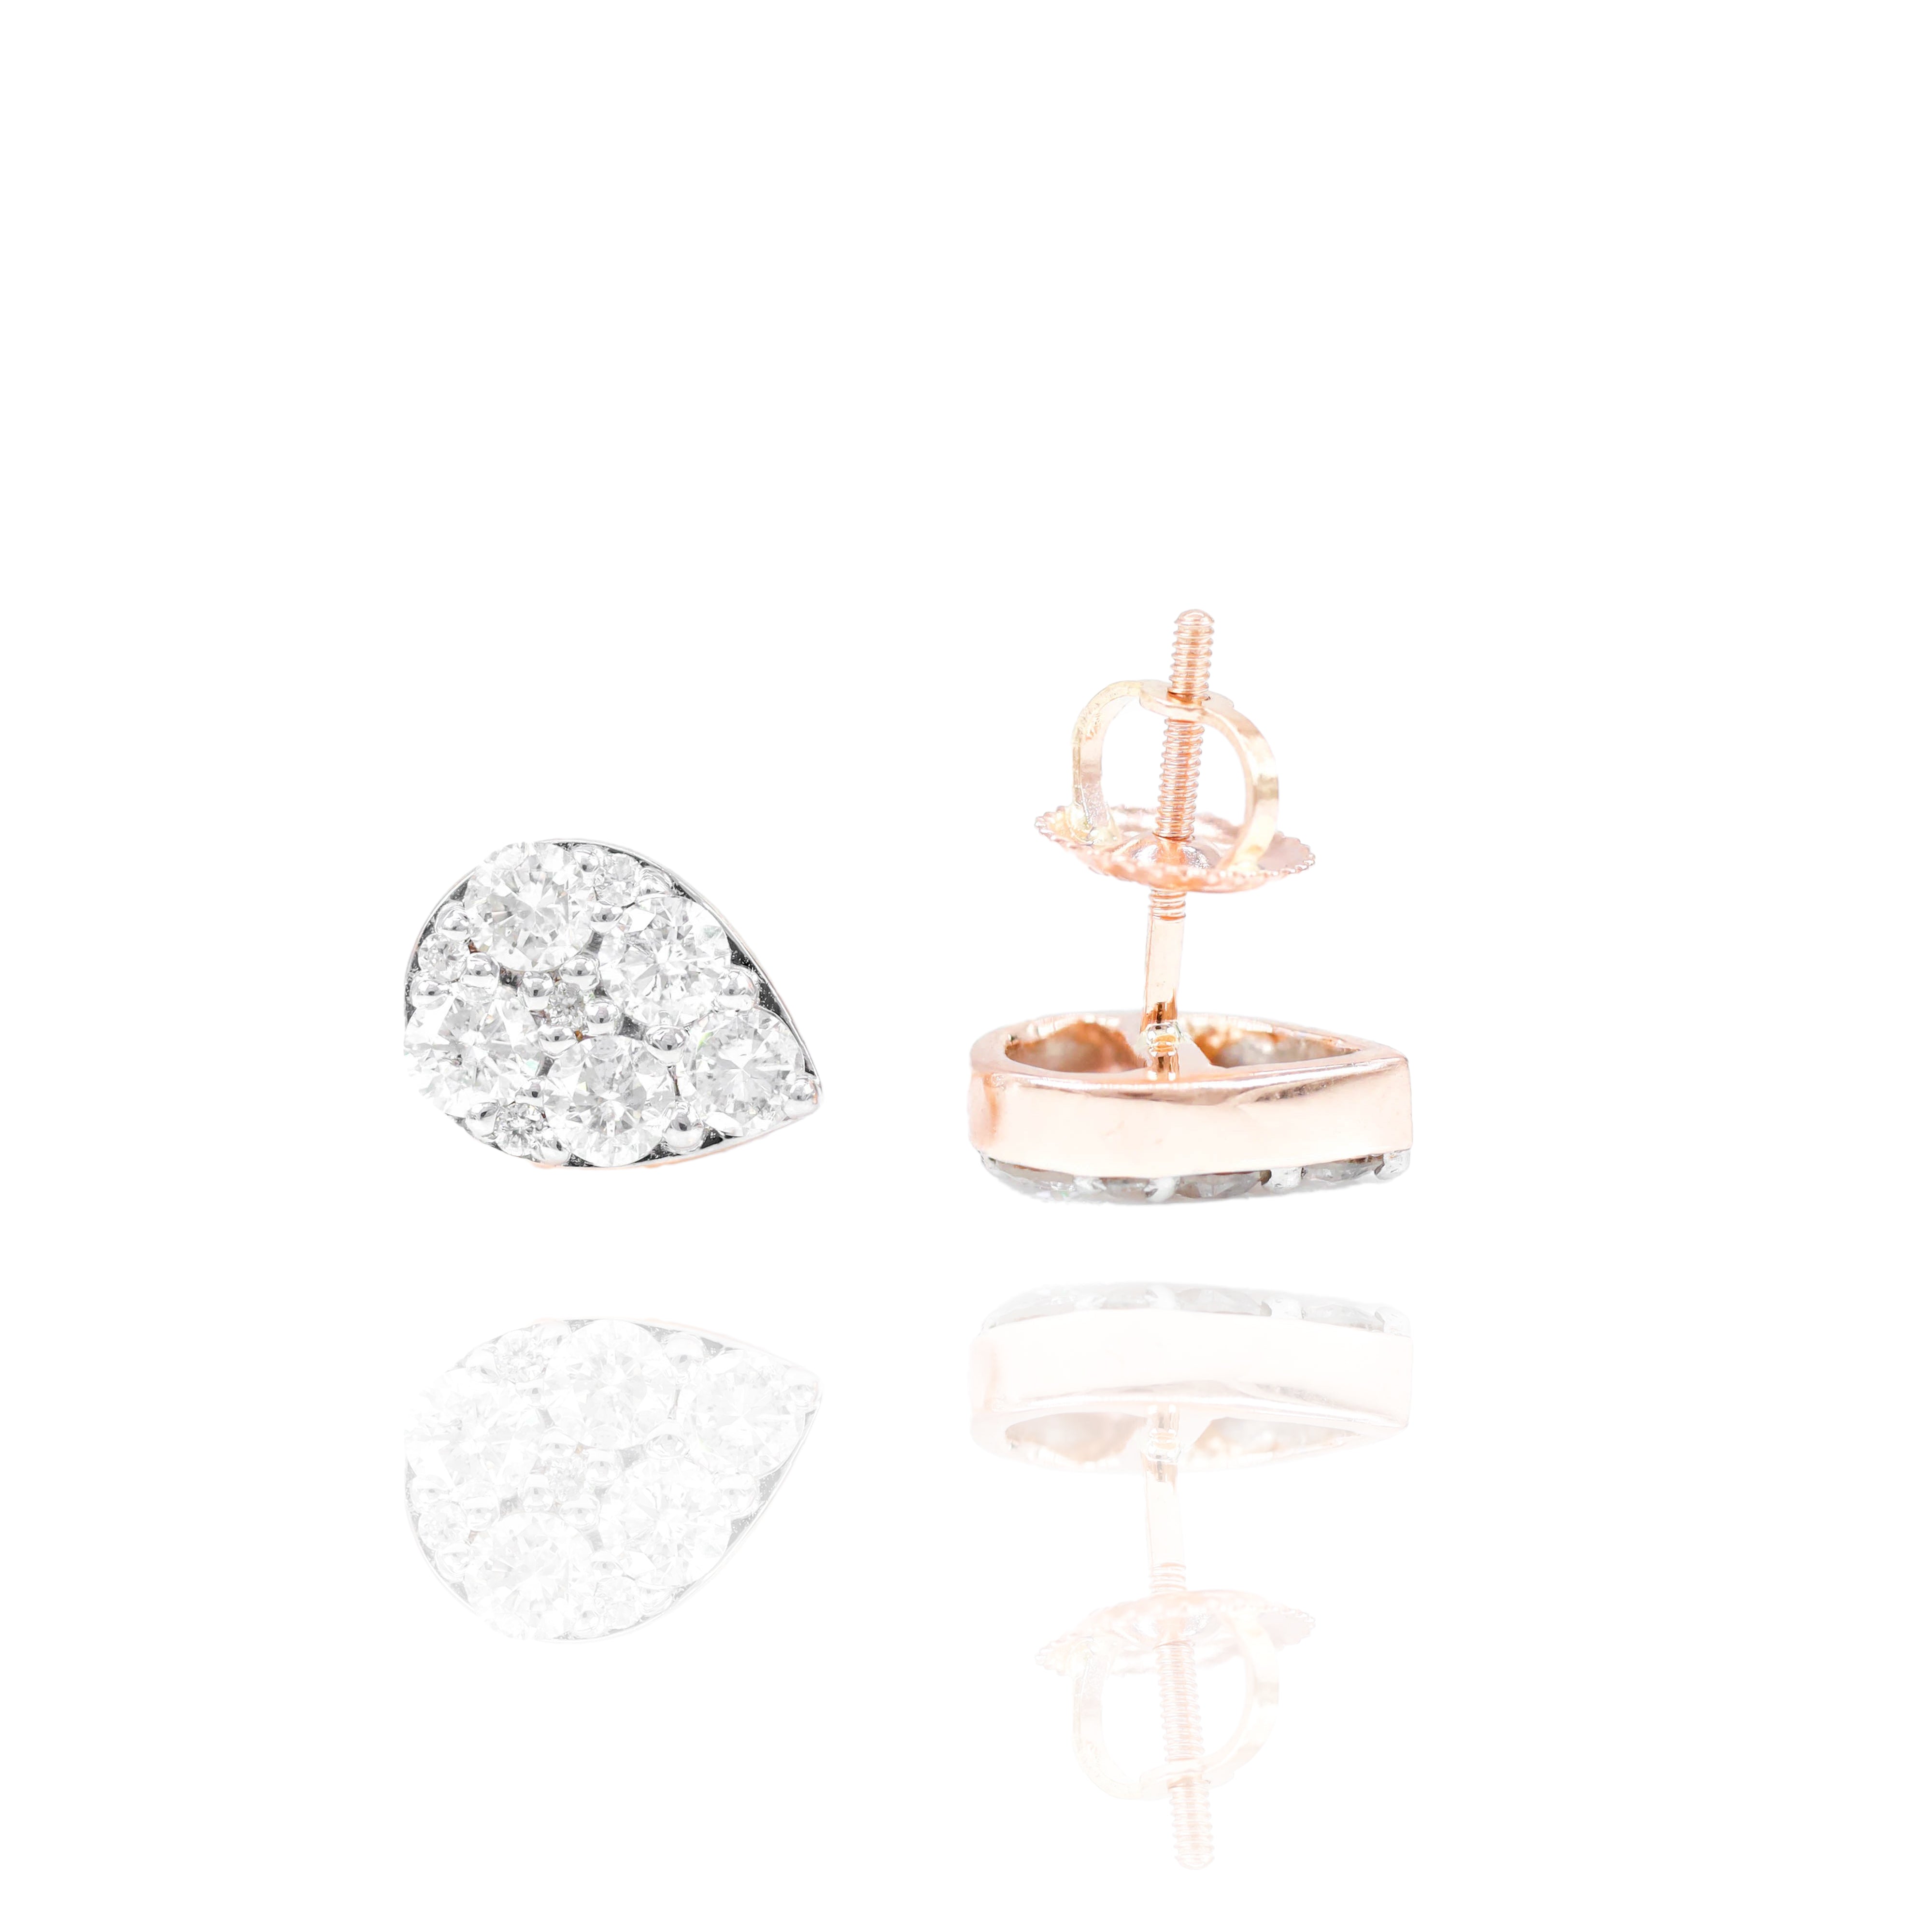 Pear Shape Cluster Diamond Earrings